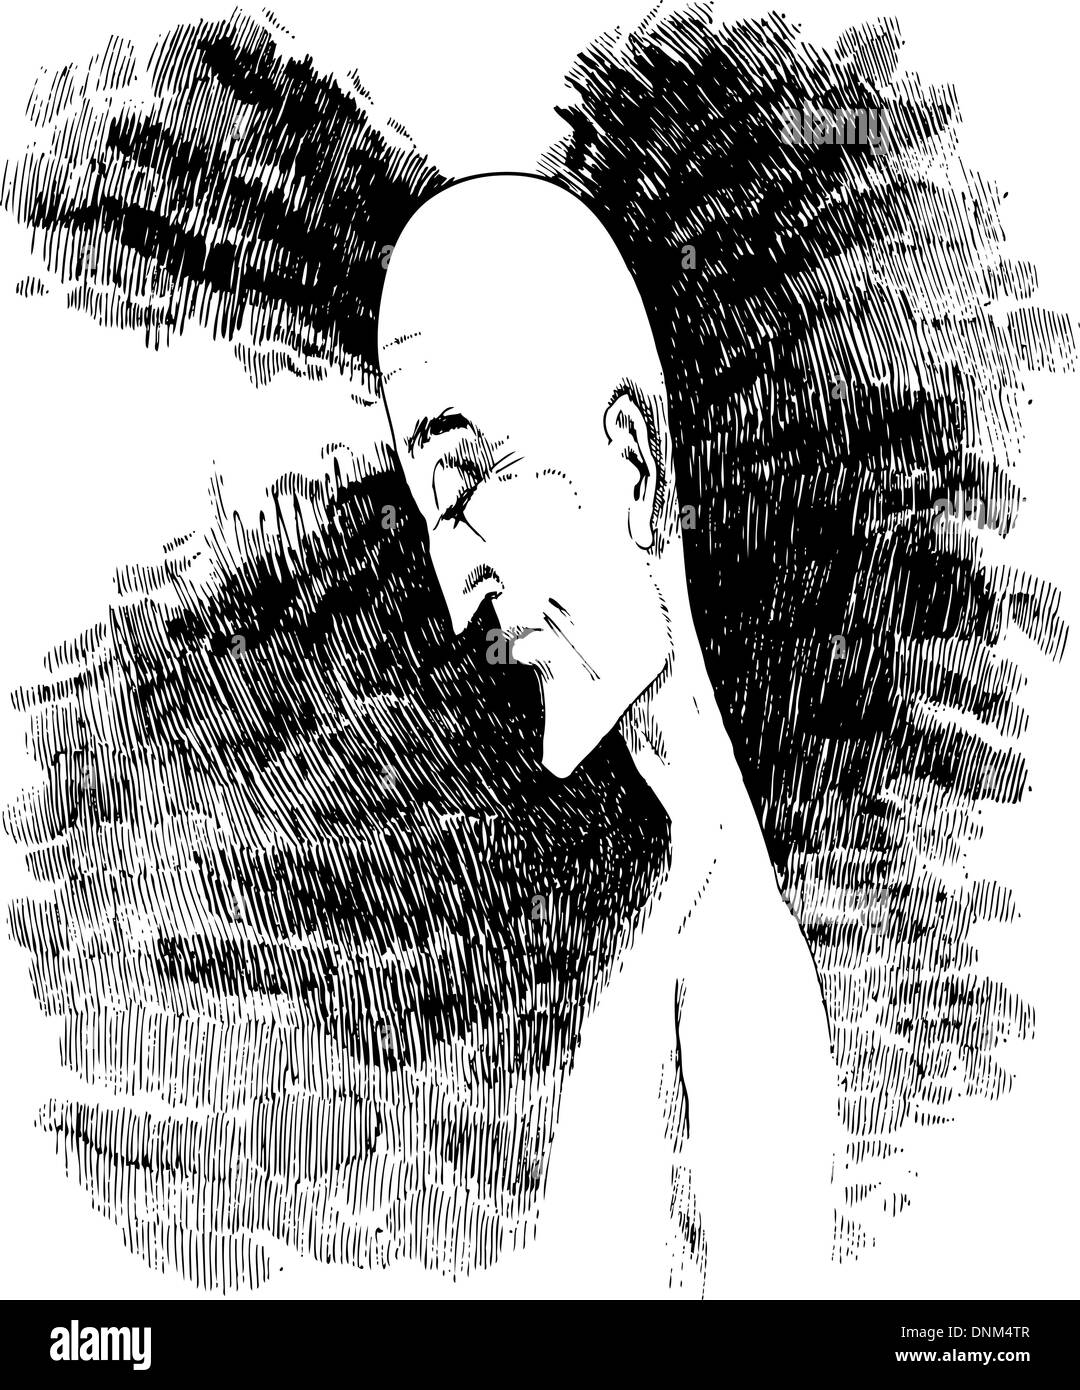 Schizzo di disegno illustrativo dell uomo in meditazione Illustrazione Vettoriale